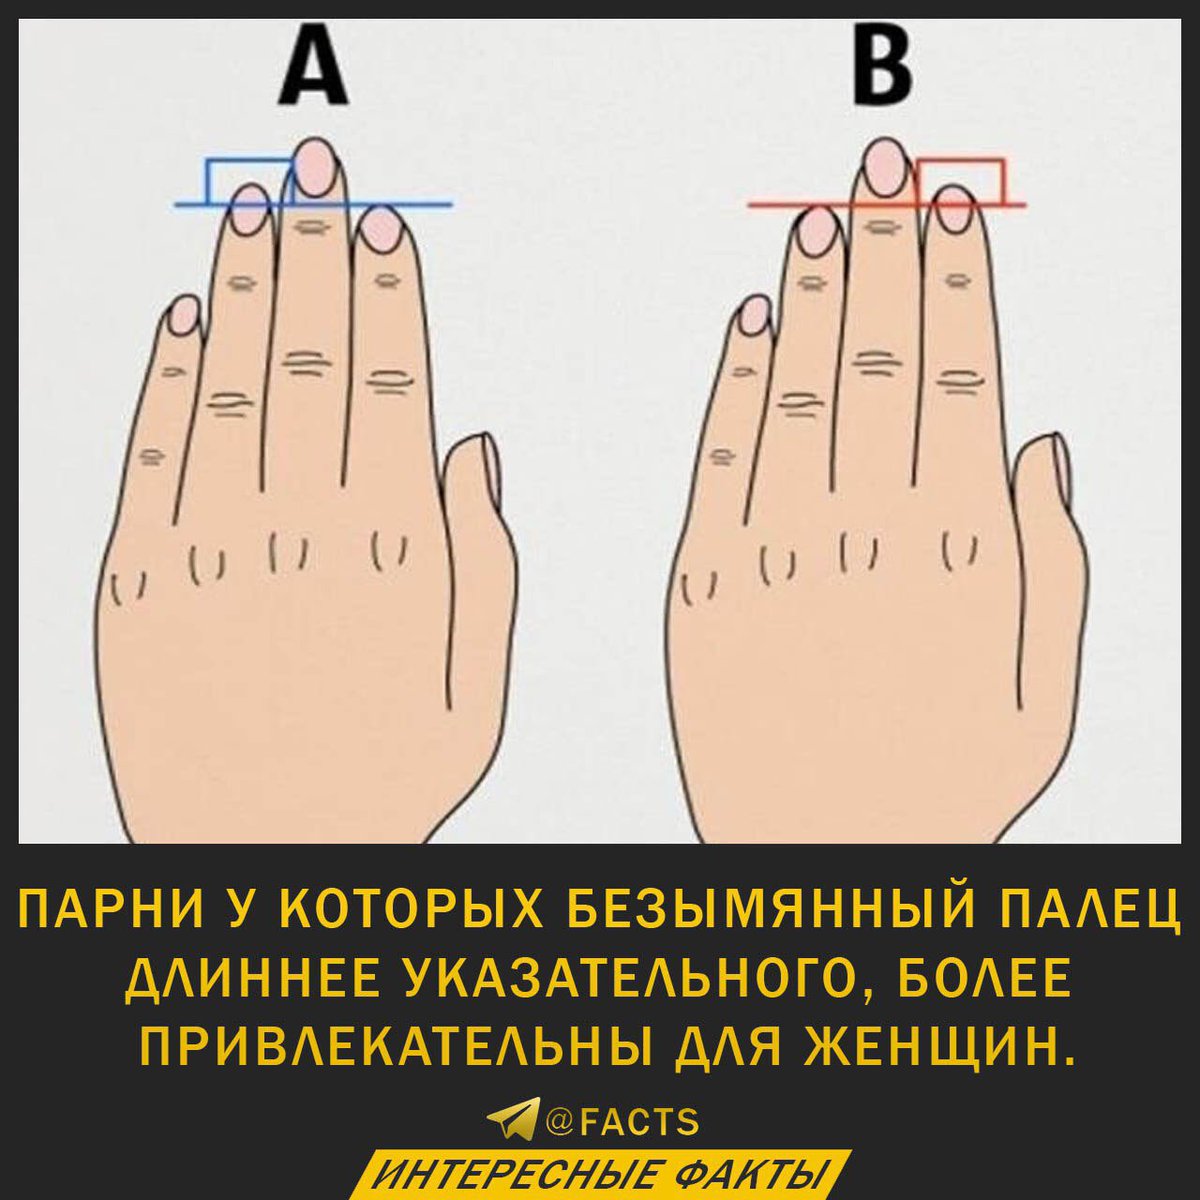 длина члена и пальцы рук в руки фото 22